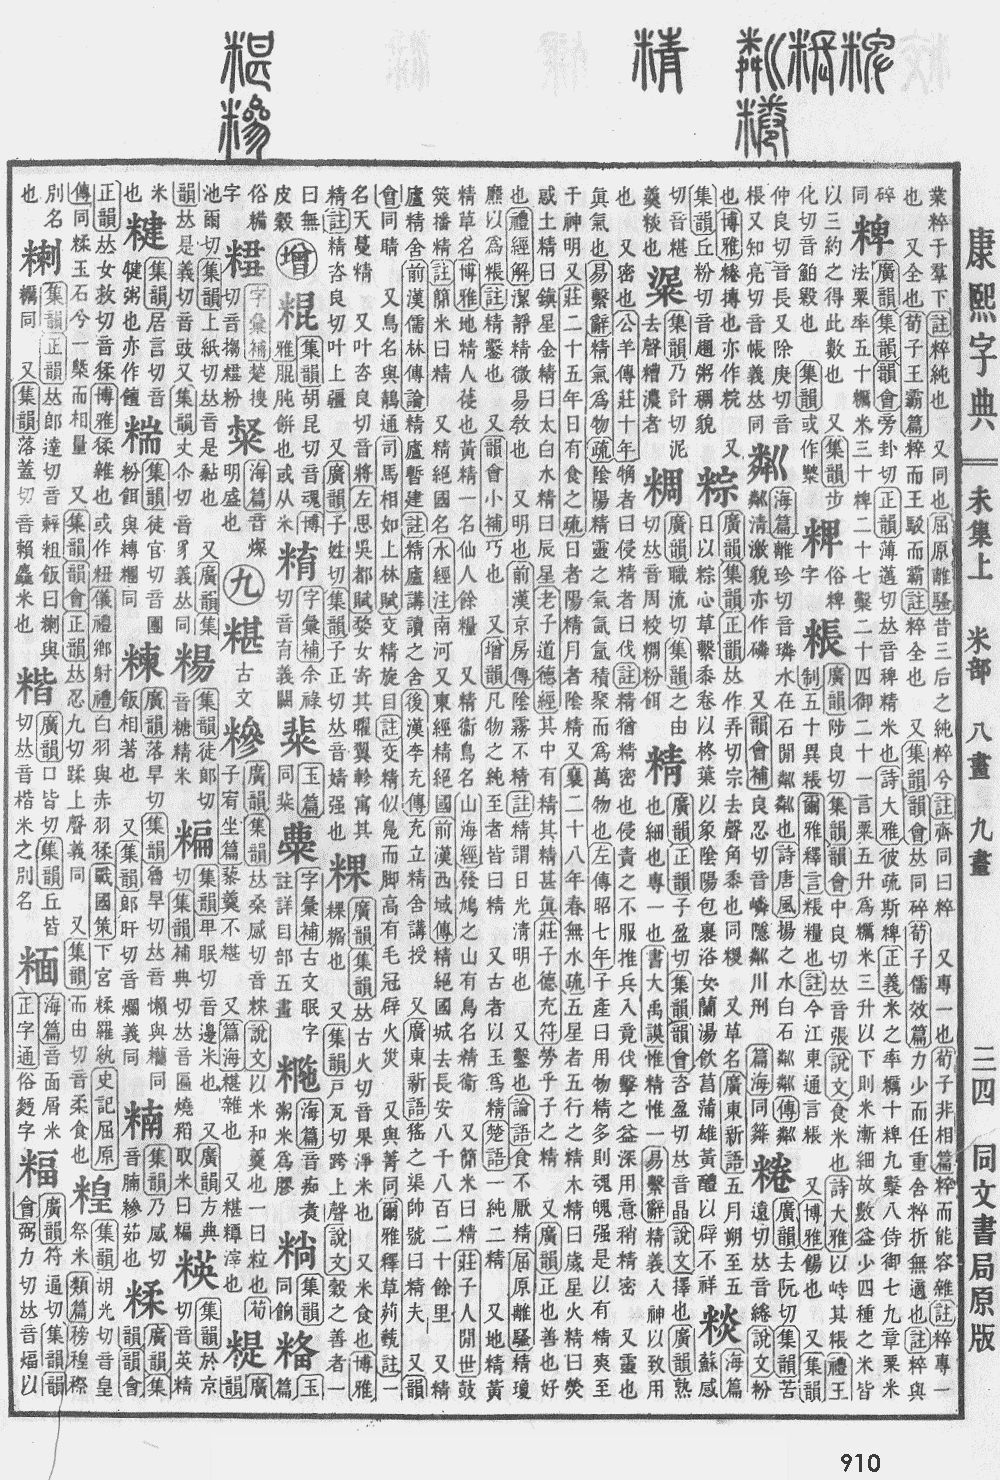 康熙字典第910页图片